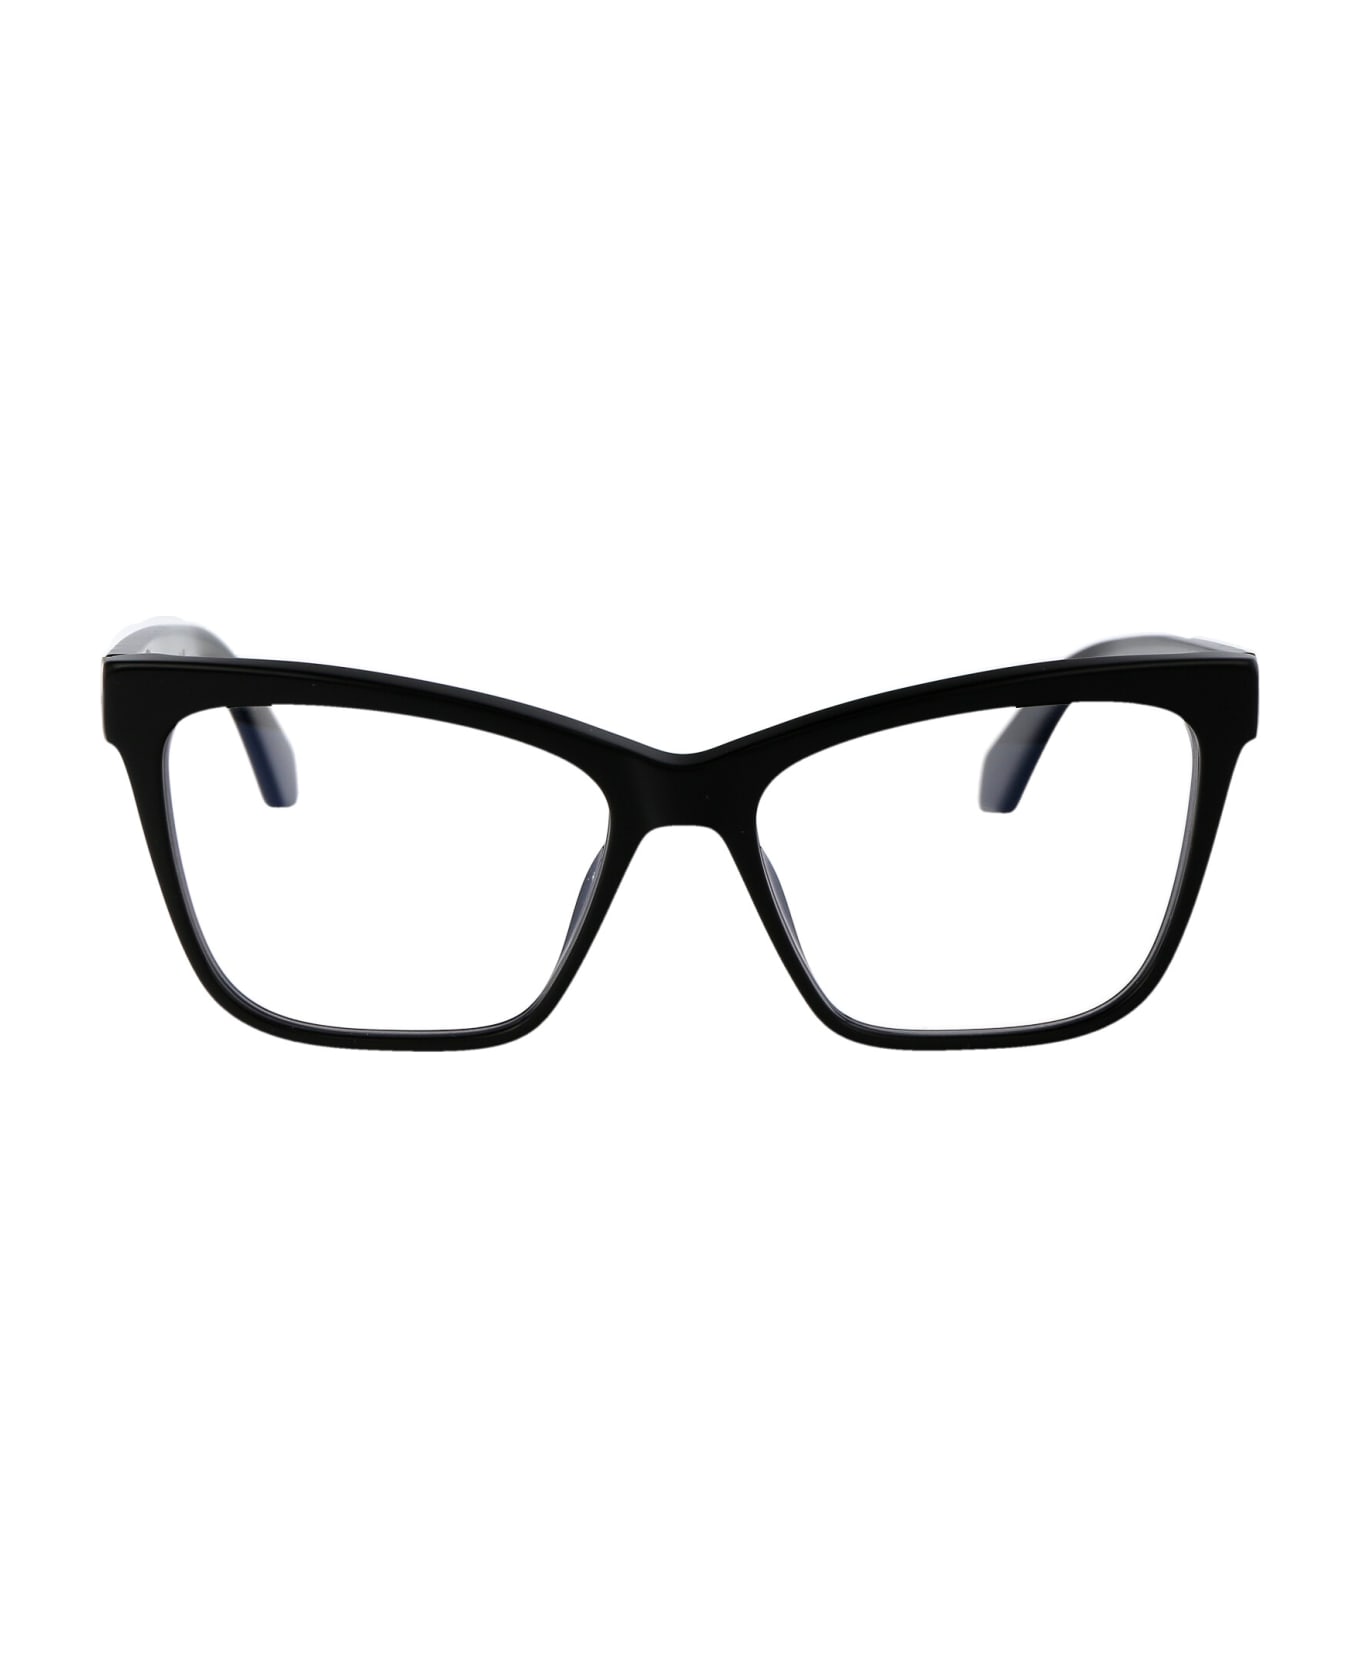 Off-White Optical Style 67 Glasses - 1000 BLACK アイウェア